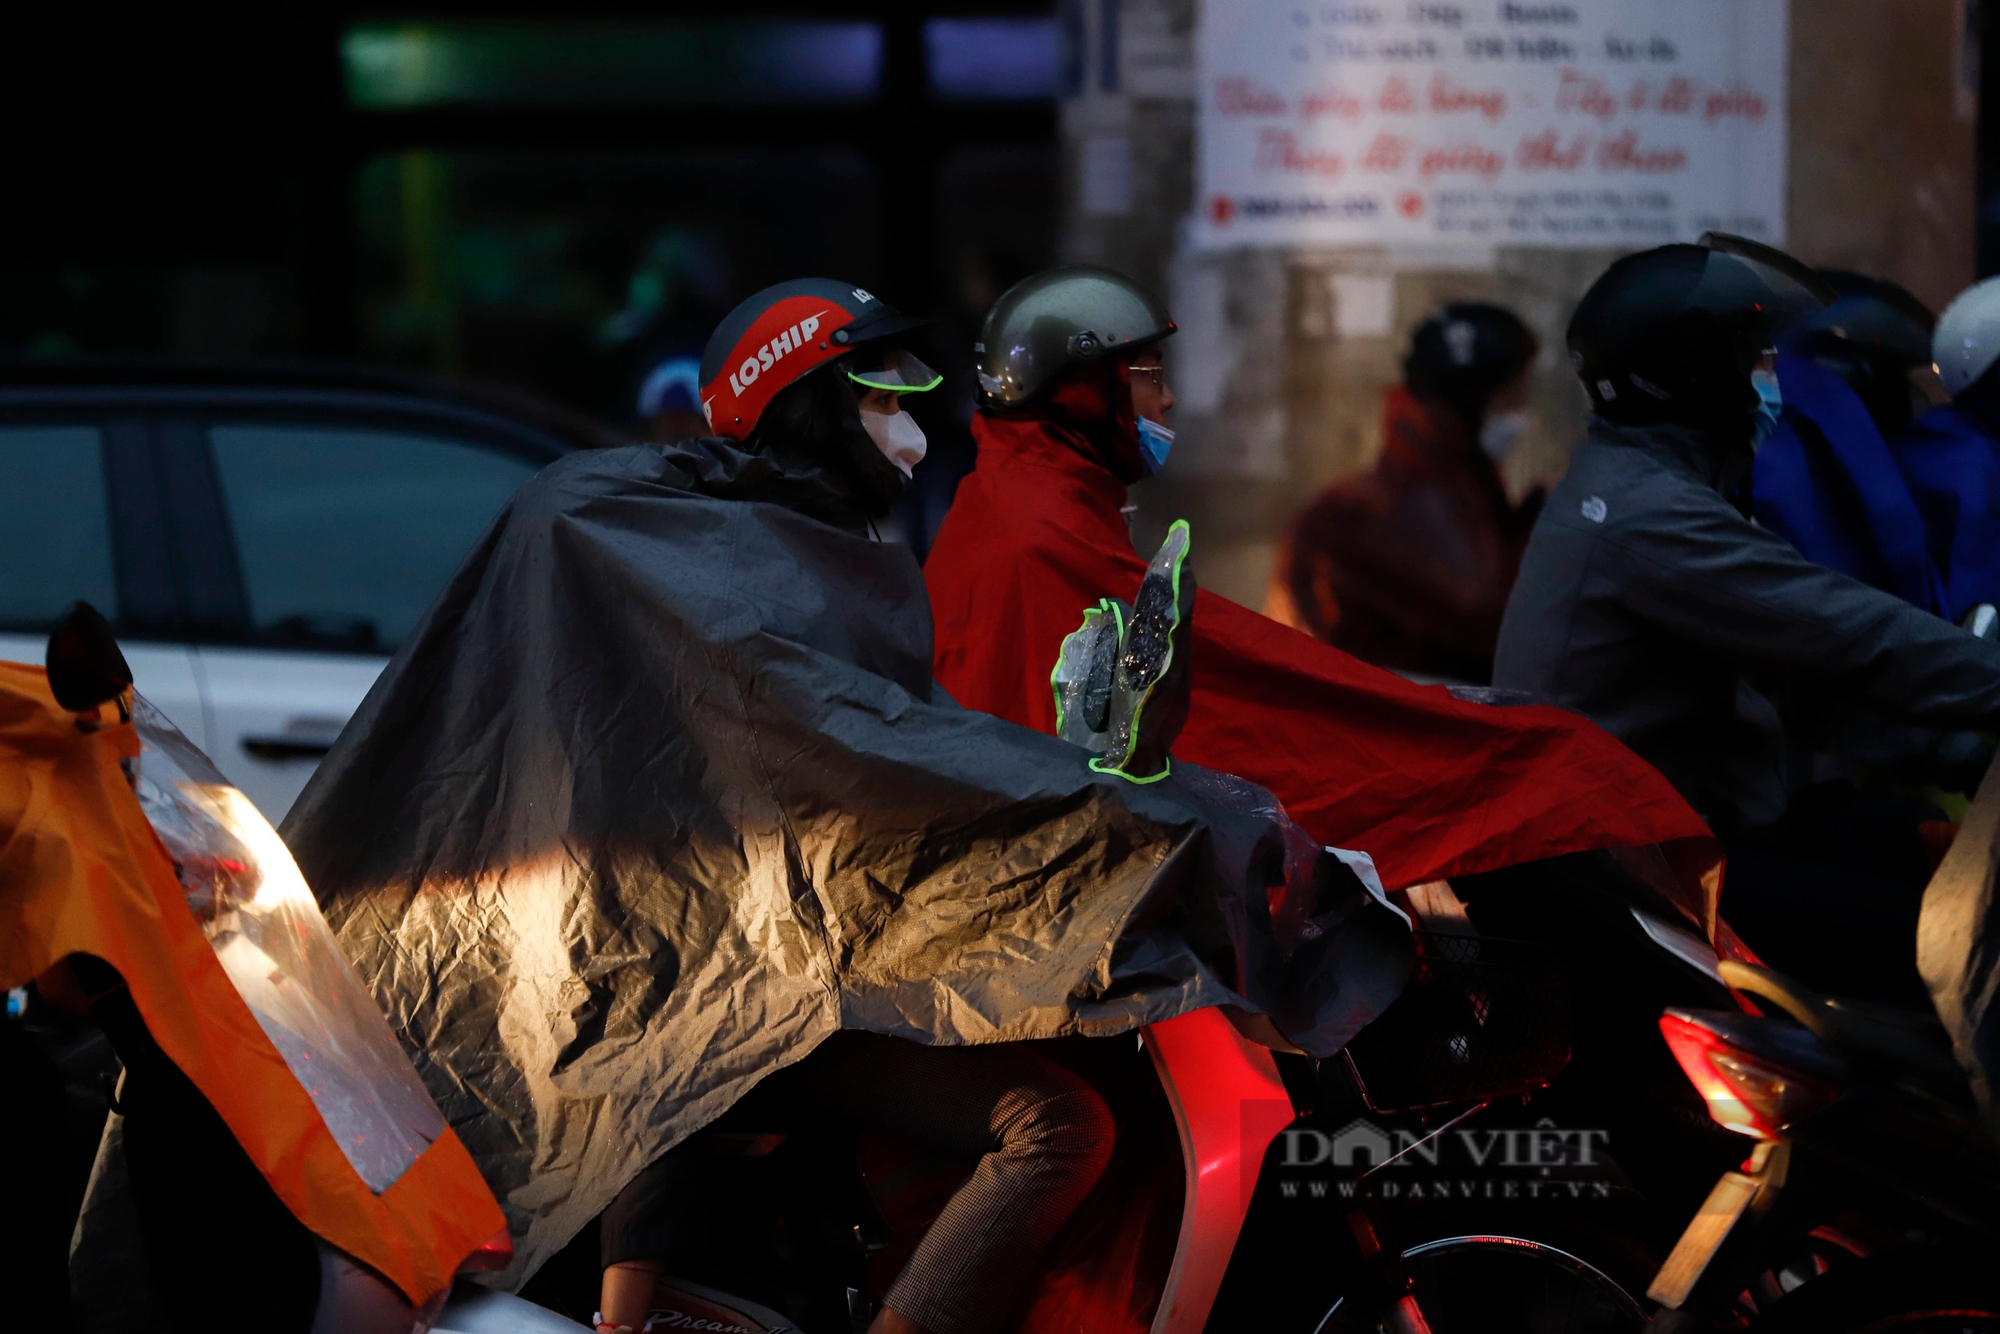 Nhiệt độ tại Hà Nội "giảm sốc", người dân chật vật đi làm trong cảnh mưa rét, tắc đường- Ảnh 3.